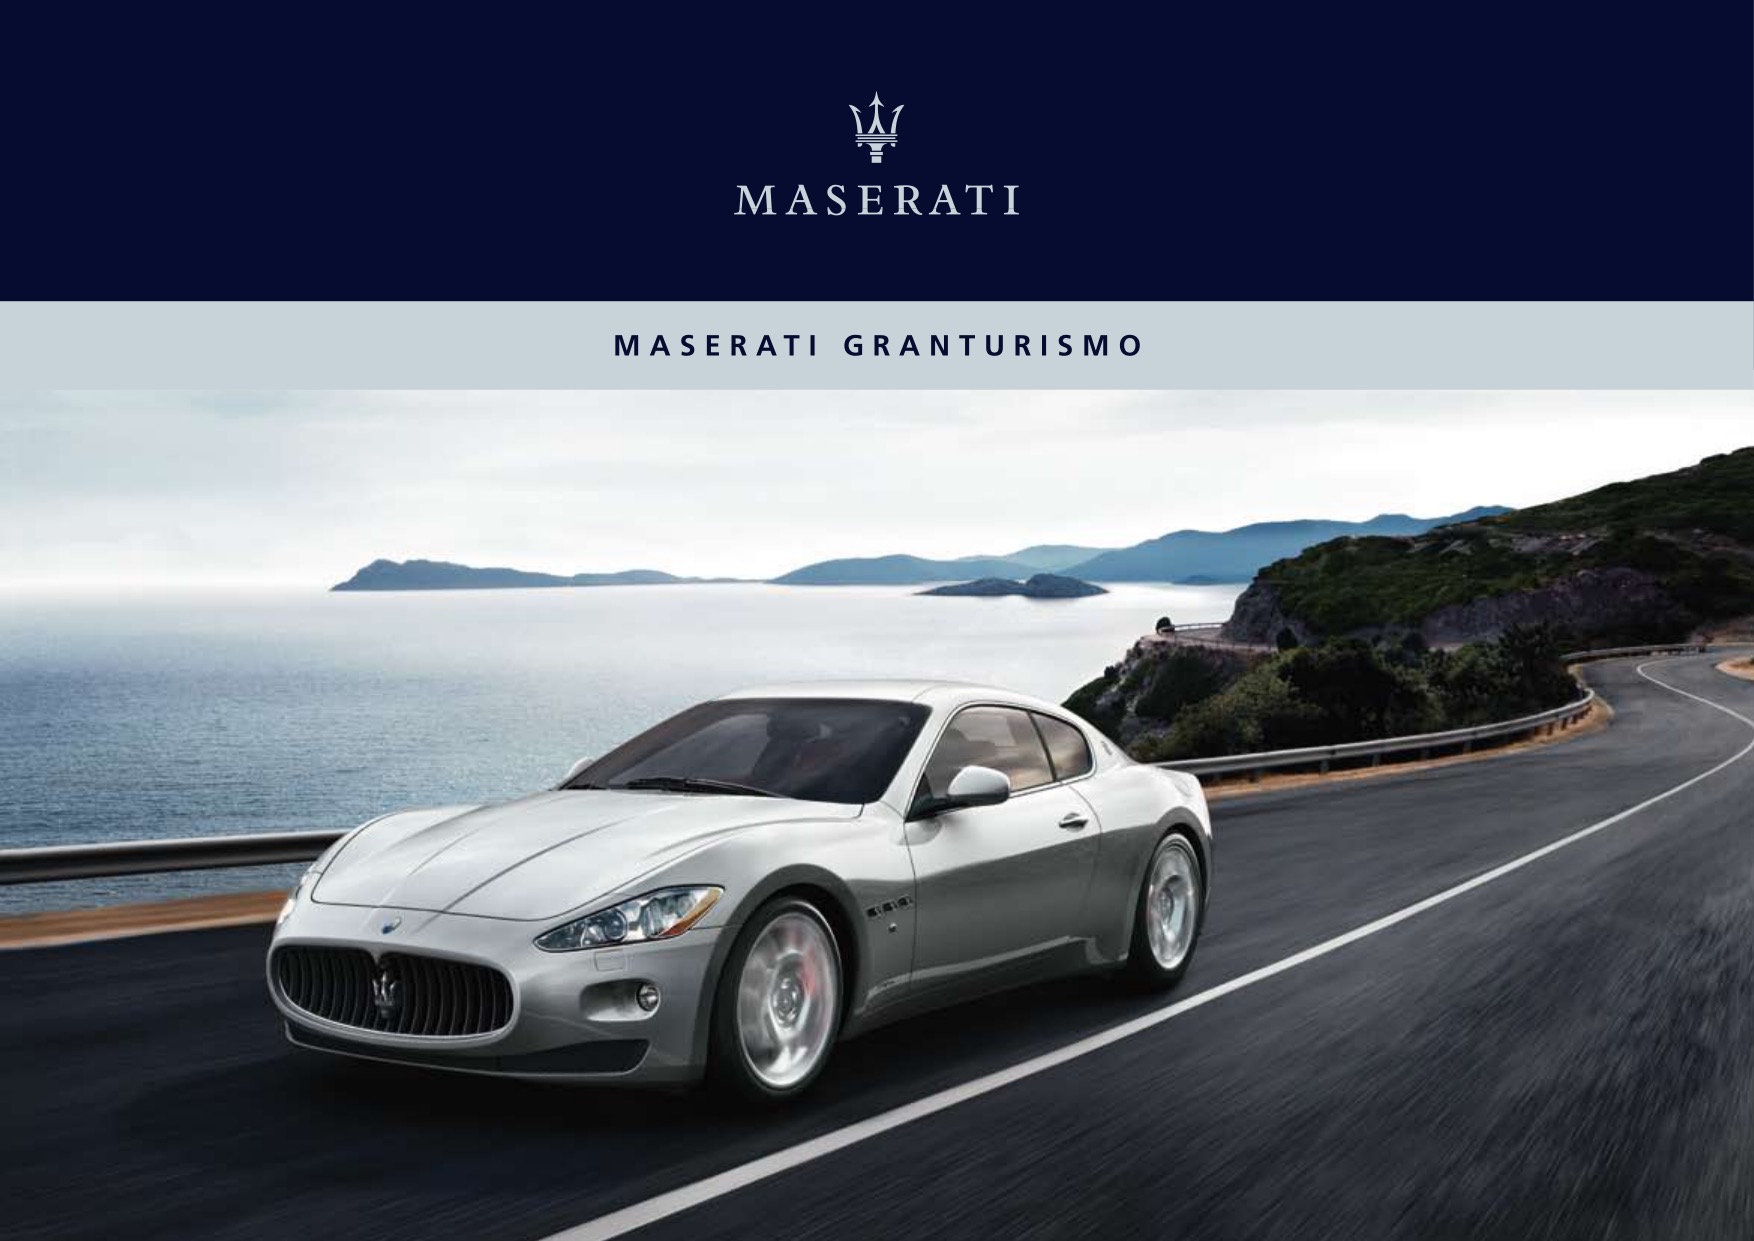 2008 Maserati Granturismo Brochure